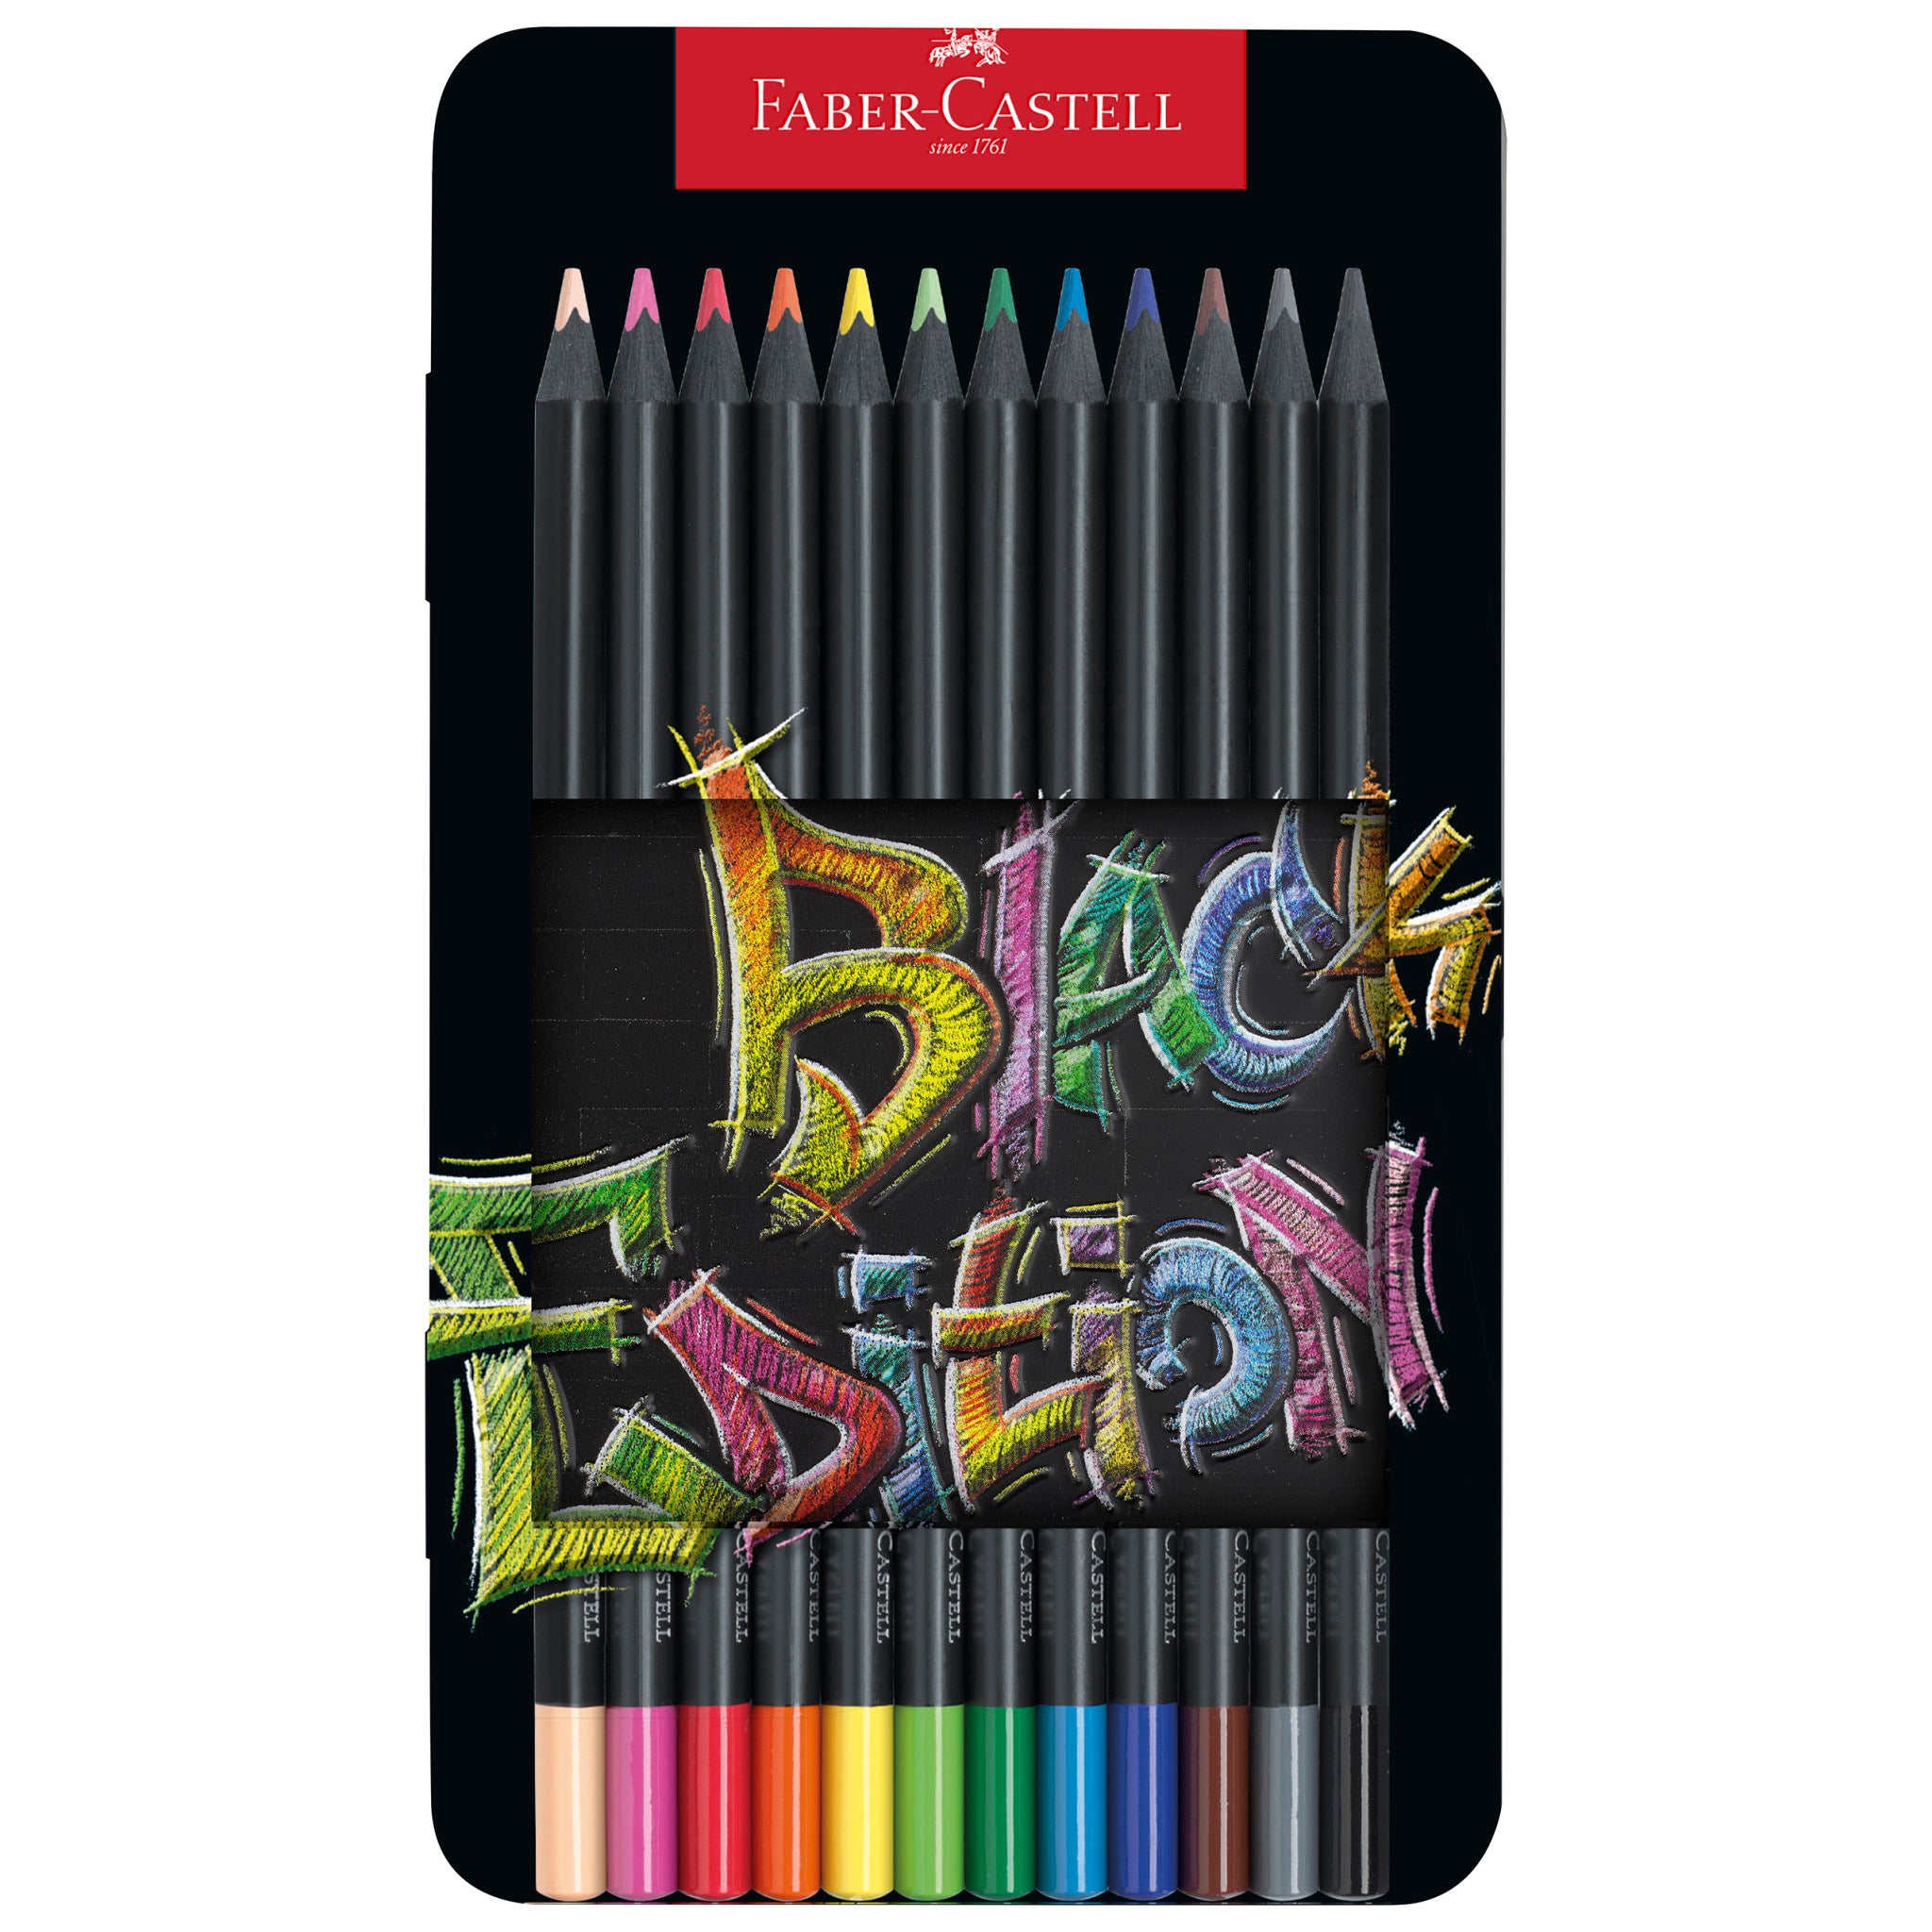 Coloured pencils Black Edition Neon + Pastel #116410